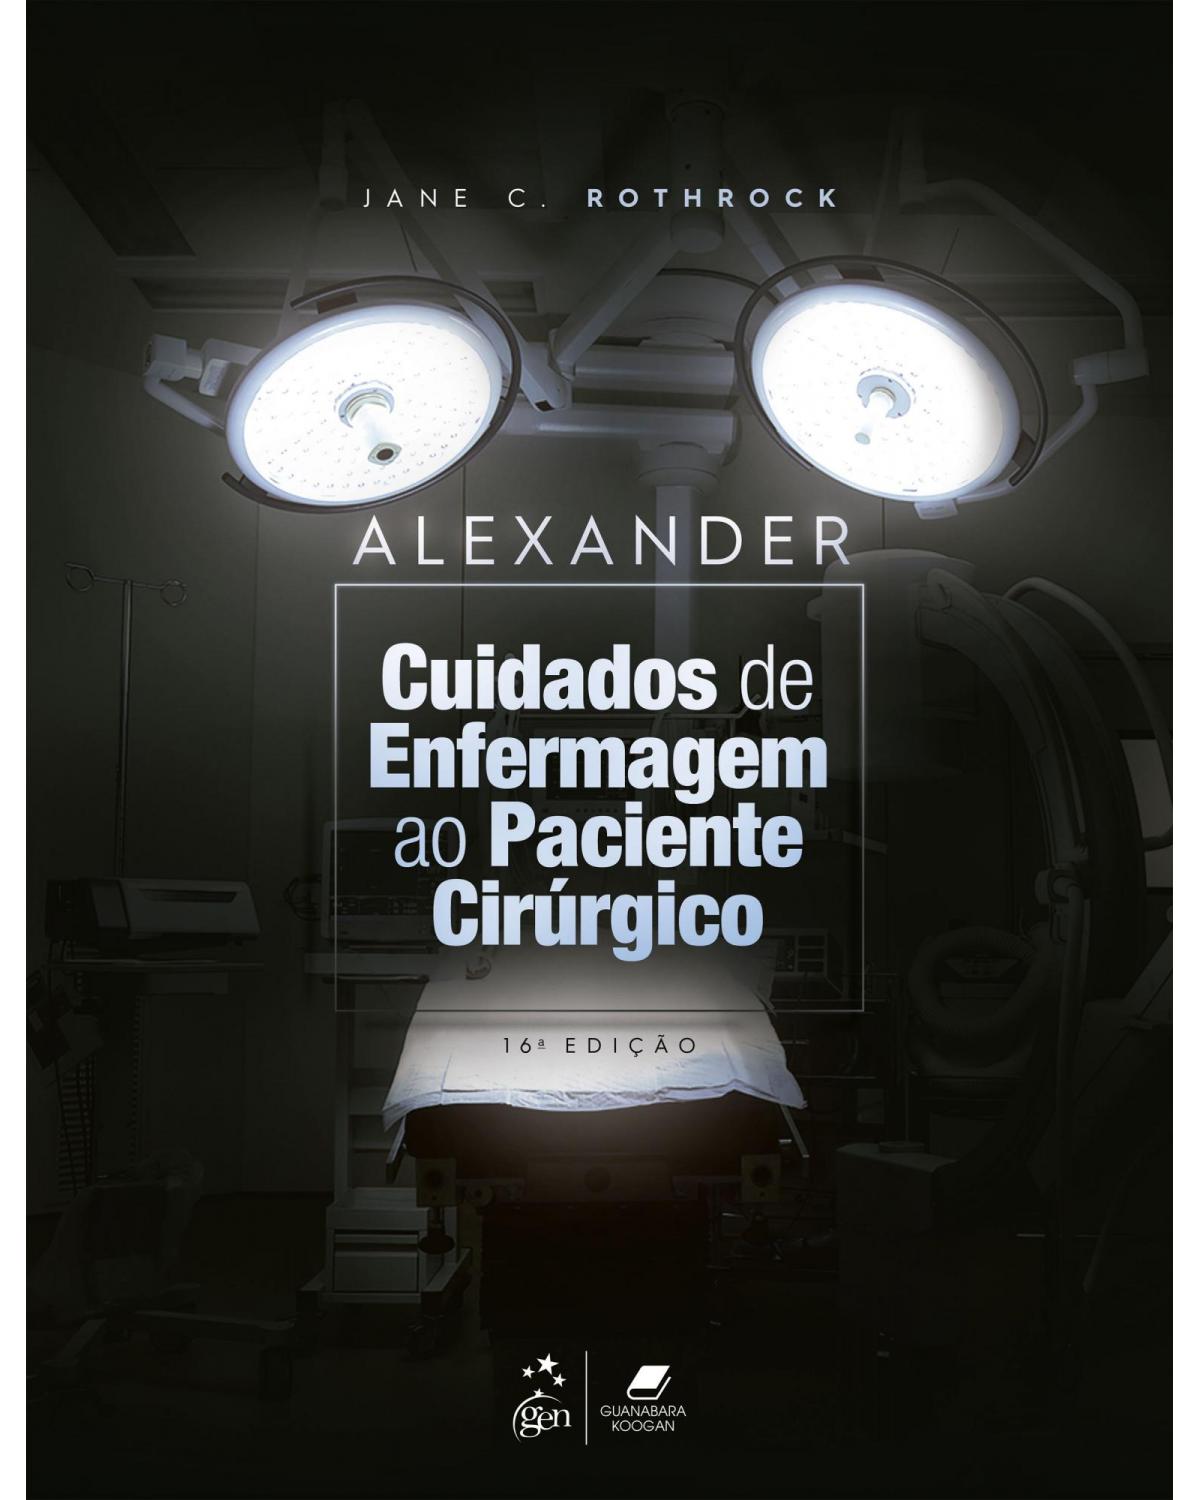 Alexander - Cuidados de enfermagem ao paciente cirúrgico - 16ª Edição | 2021